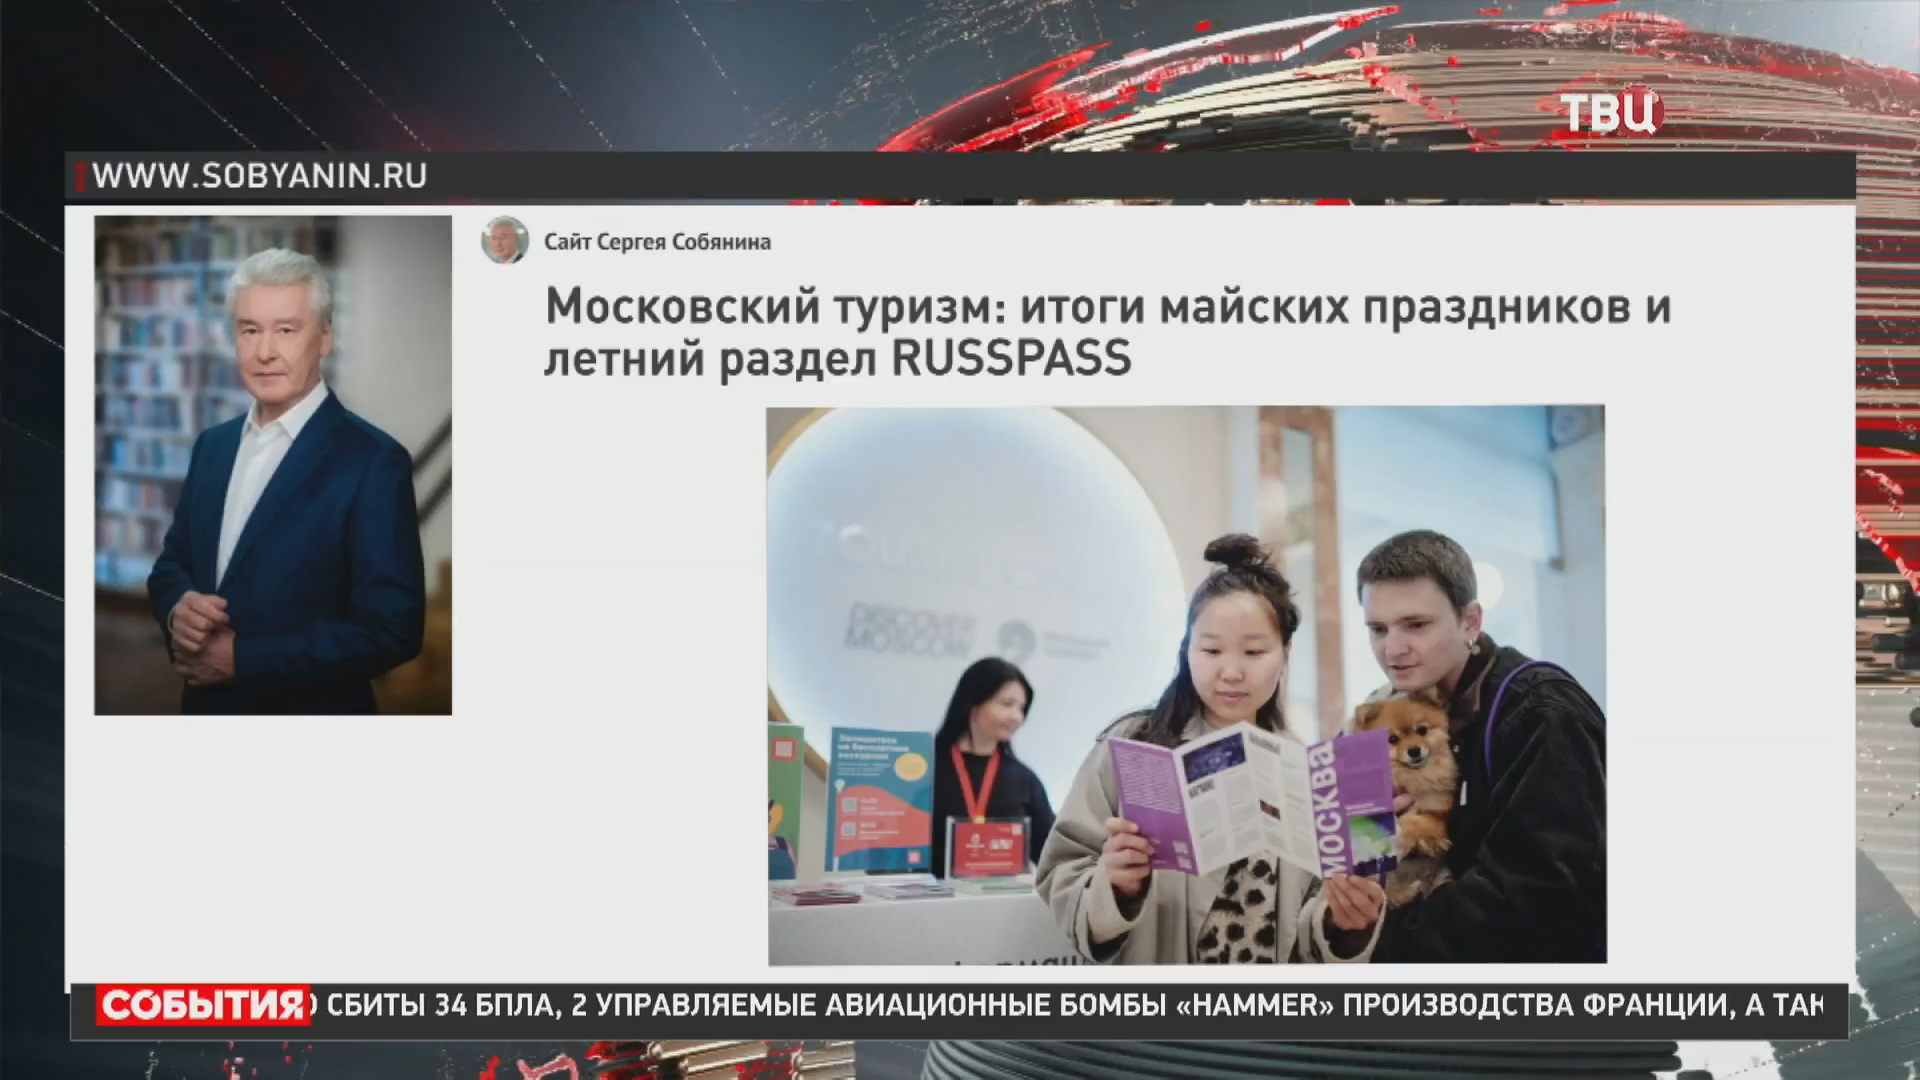 Собянин: На Russpass открылся раздел с идеями для летнего отдыха в Москве / События на ТВЦ